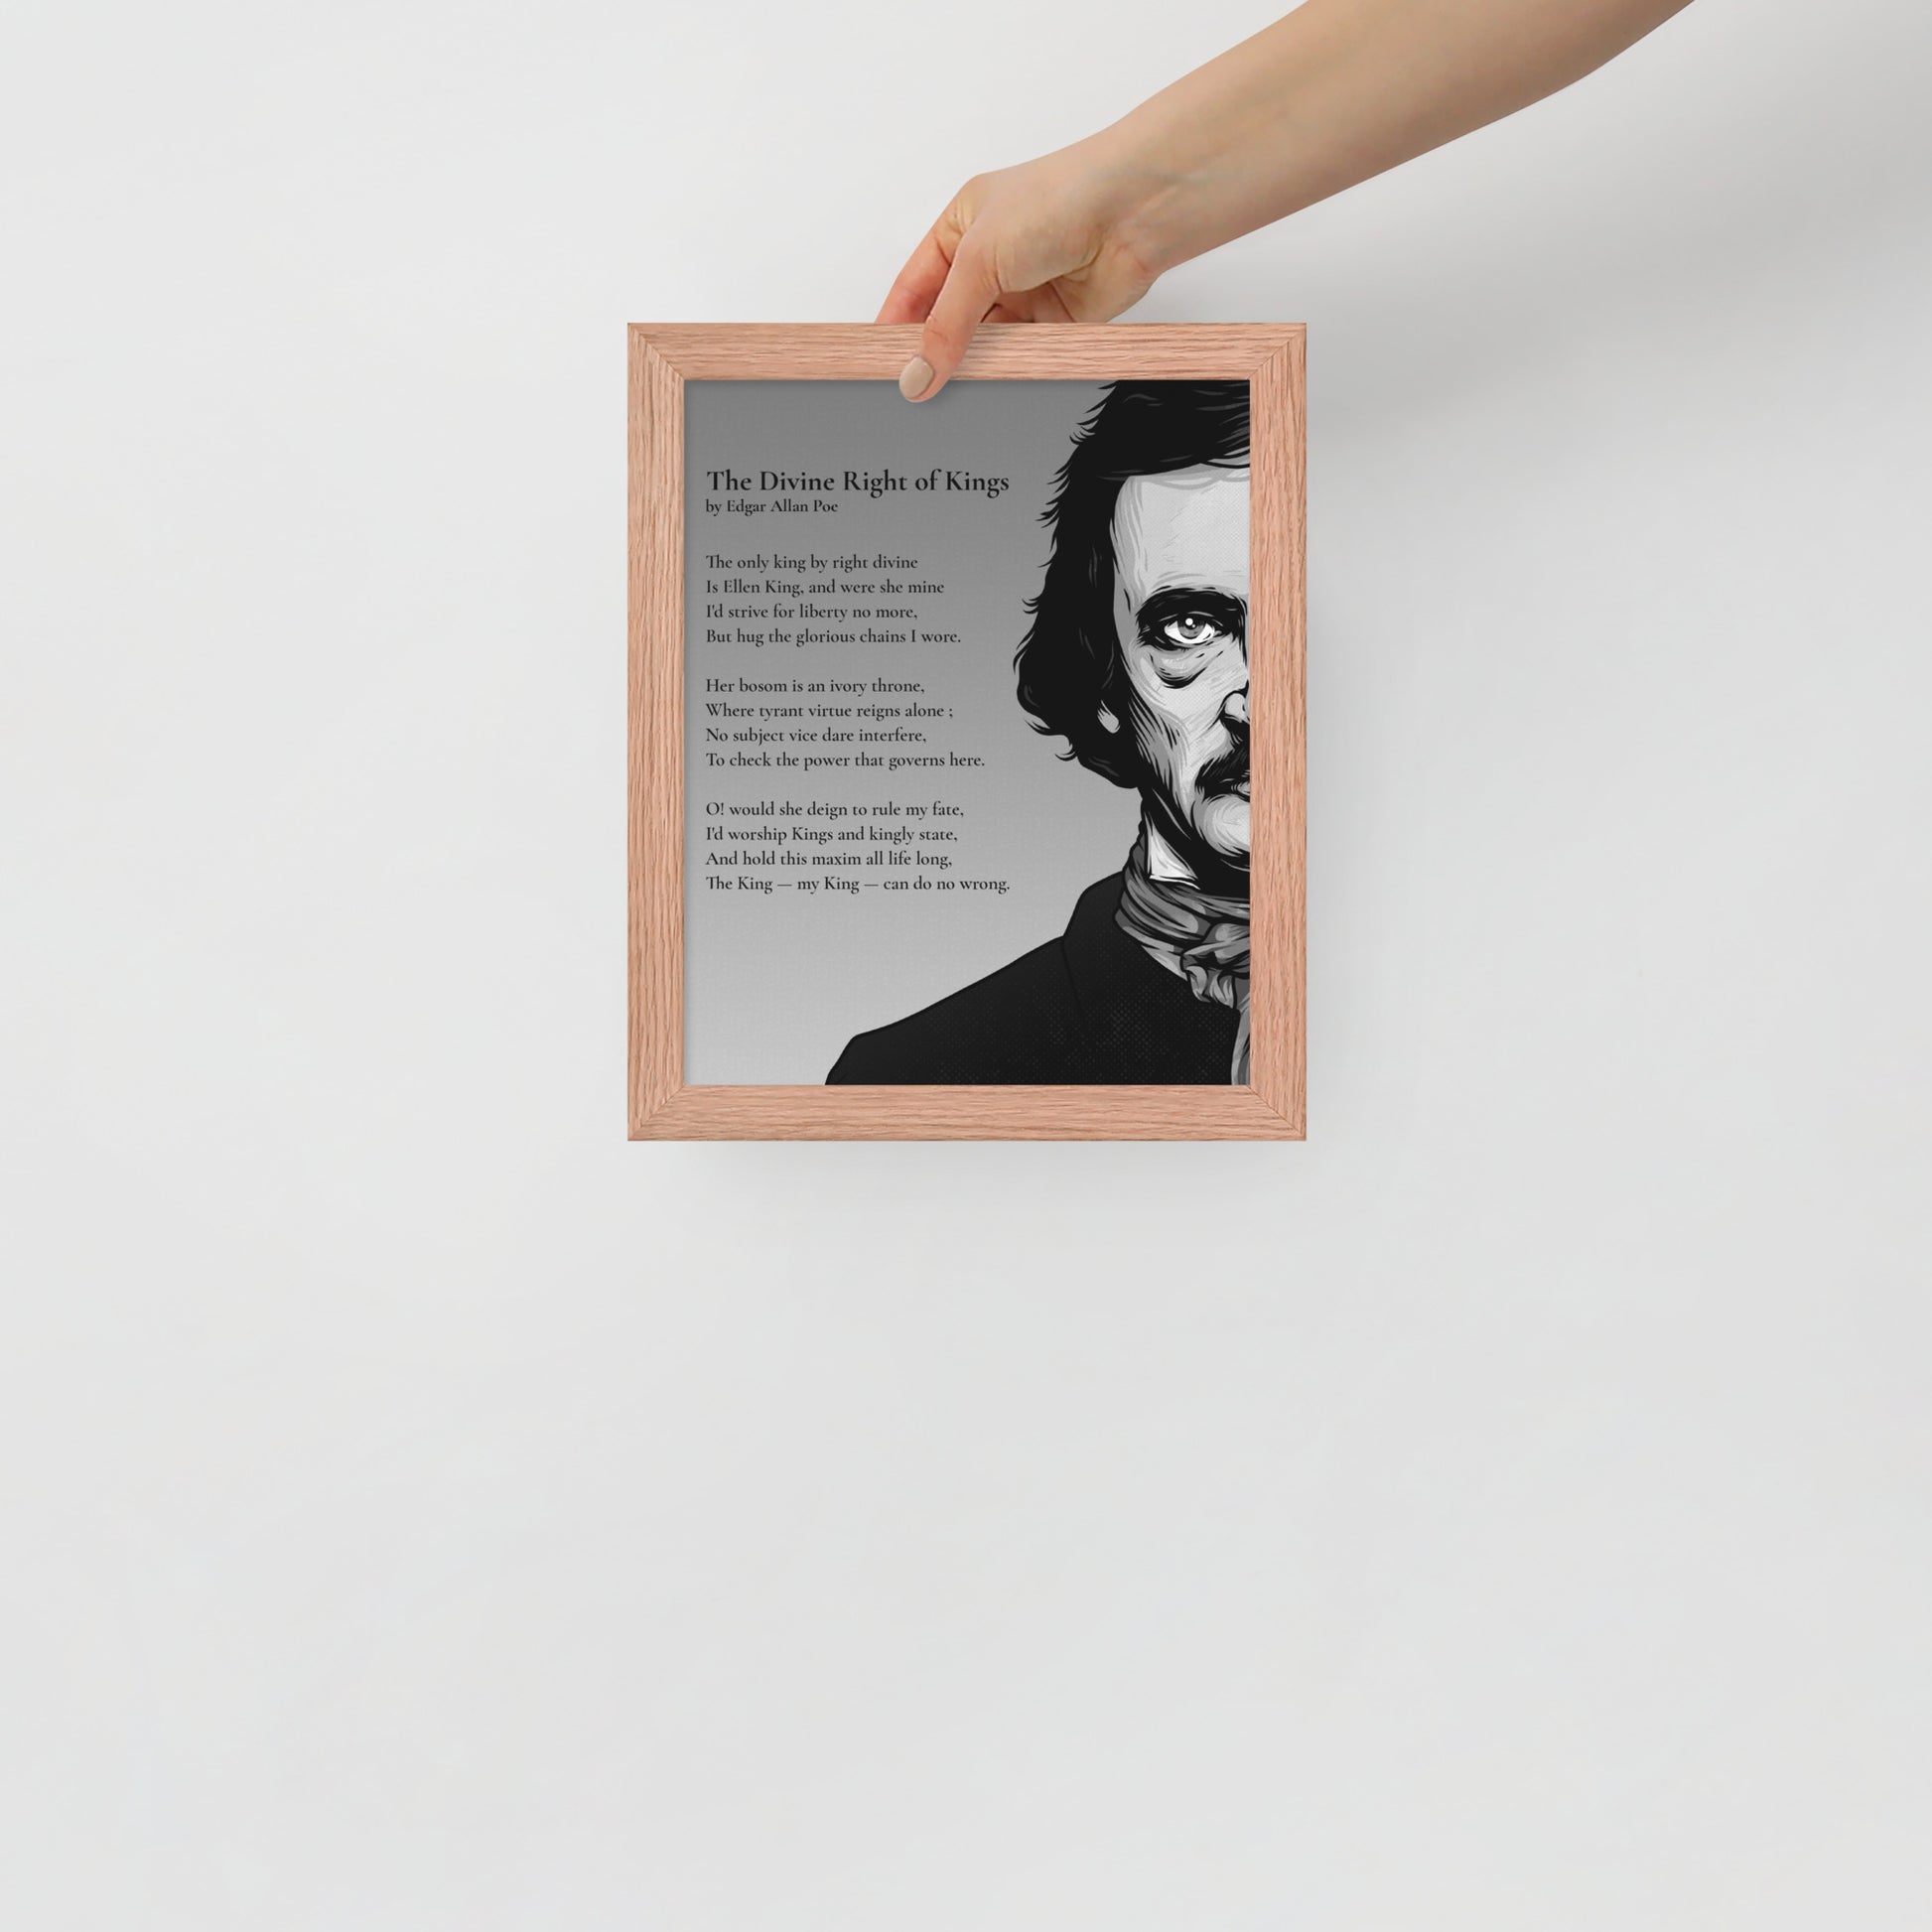 Edgar Allan Poe's 'The Divine Right of Kings' Framed Matted Poster - 8 x 10 Red Oak Frame